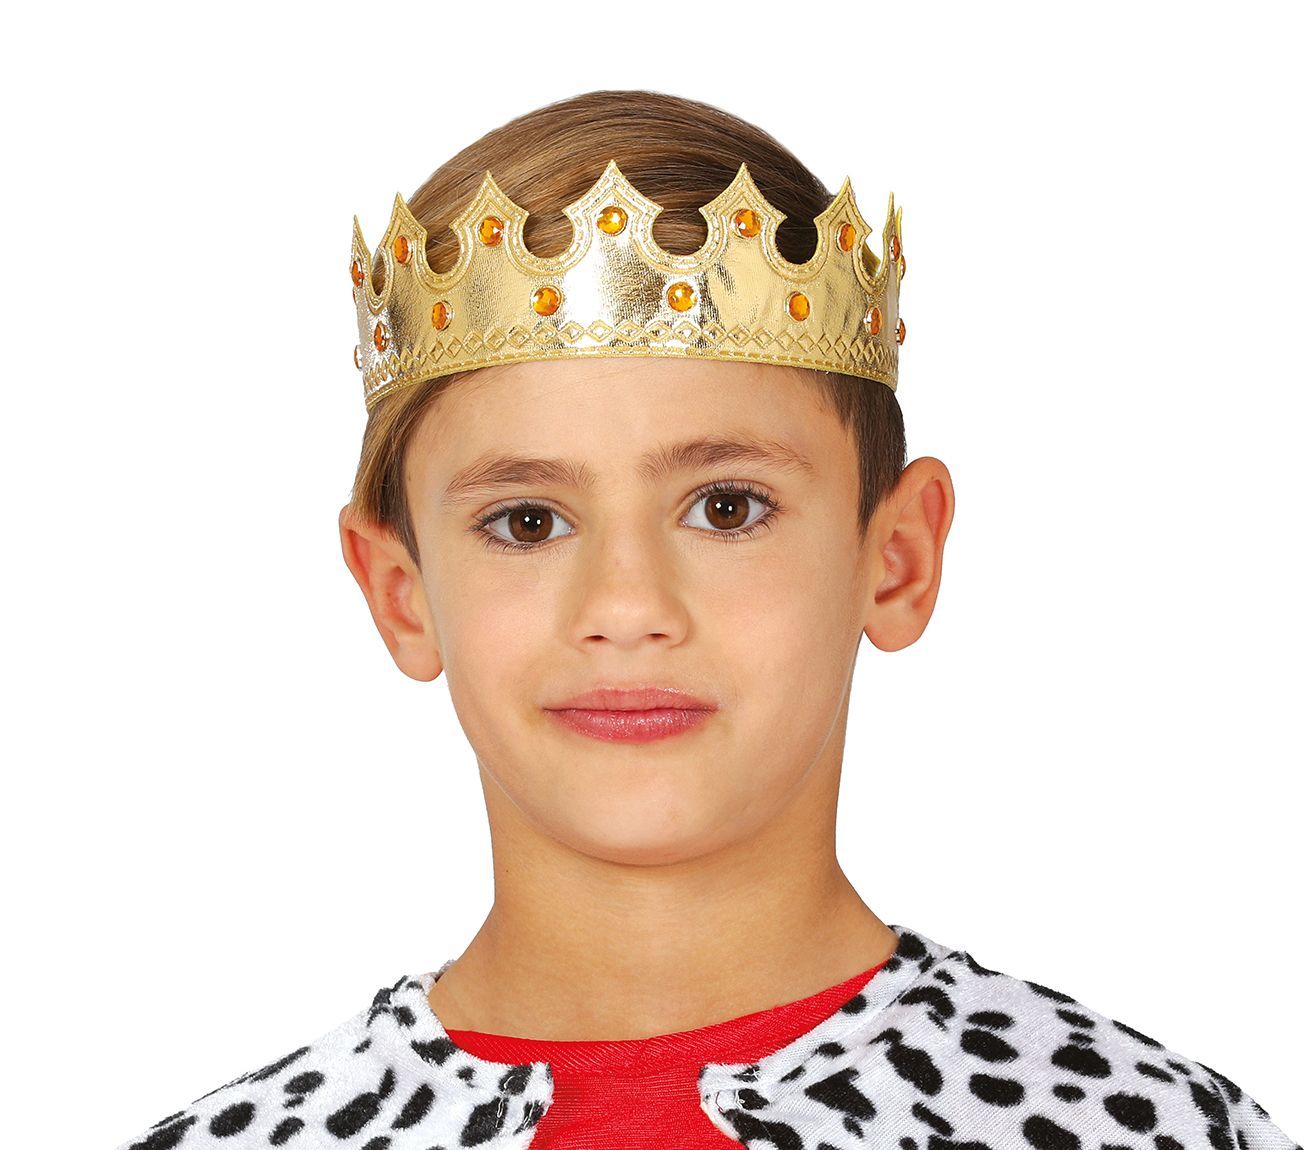 Gouden koninklijke kroon kind